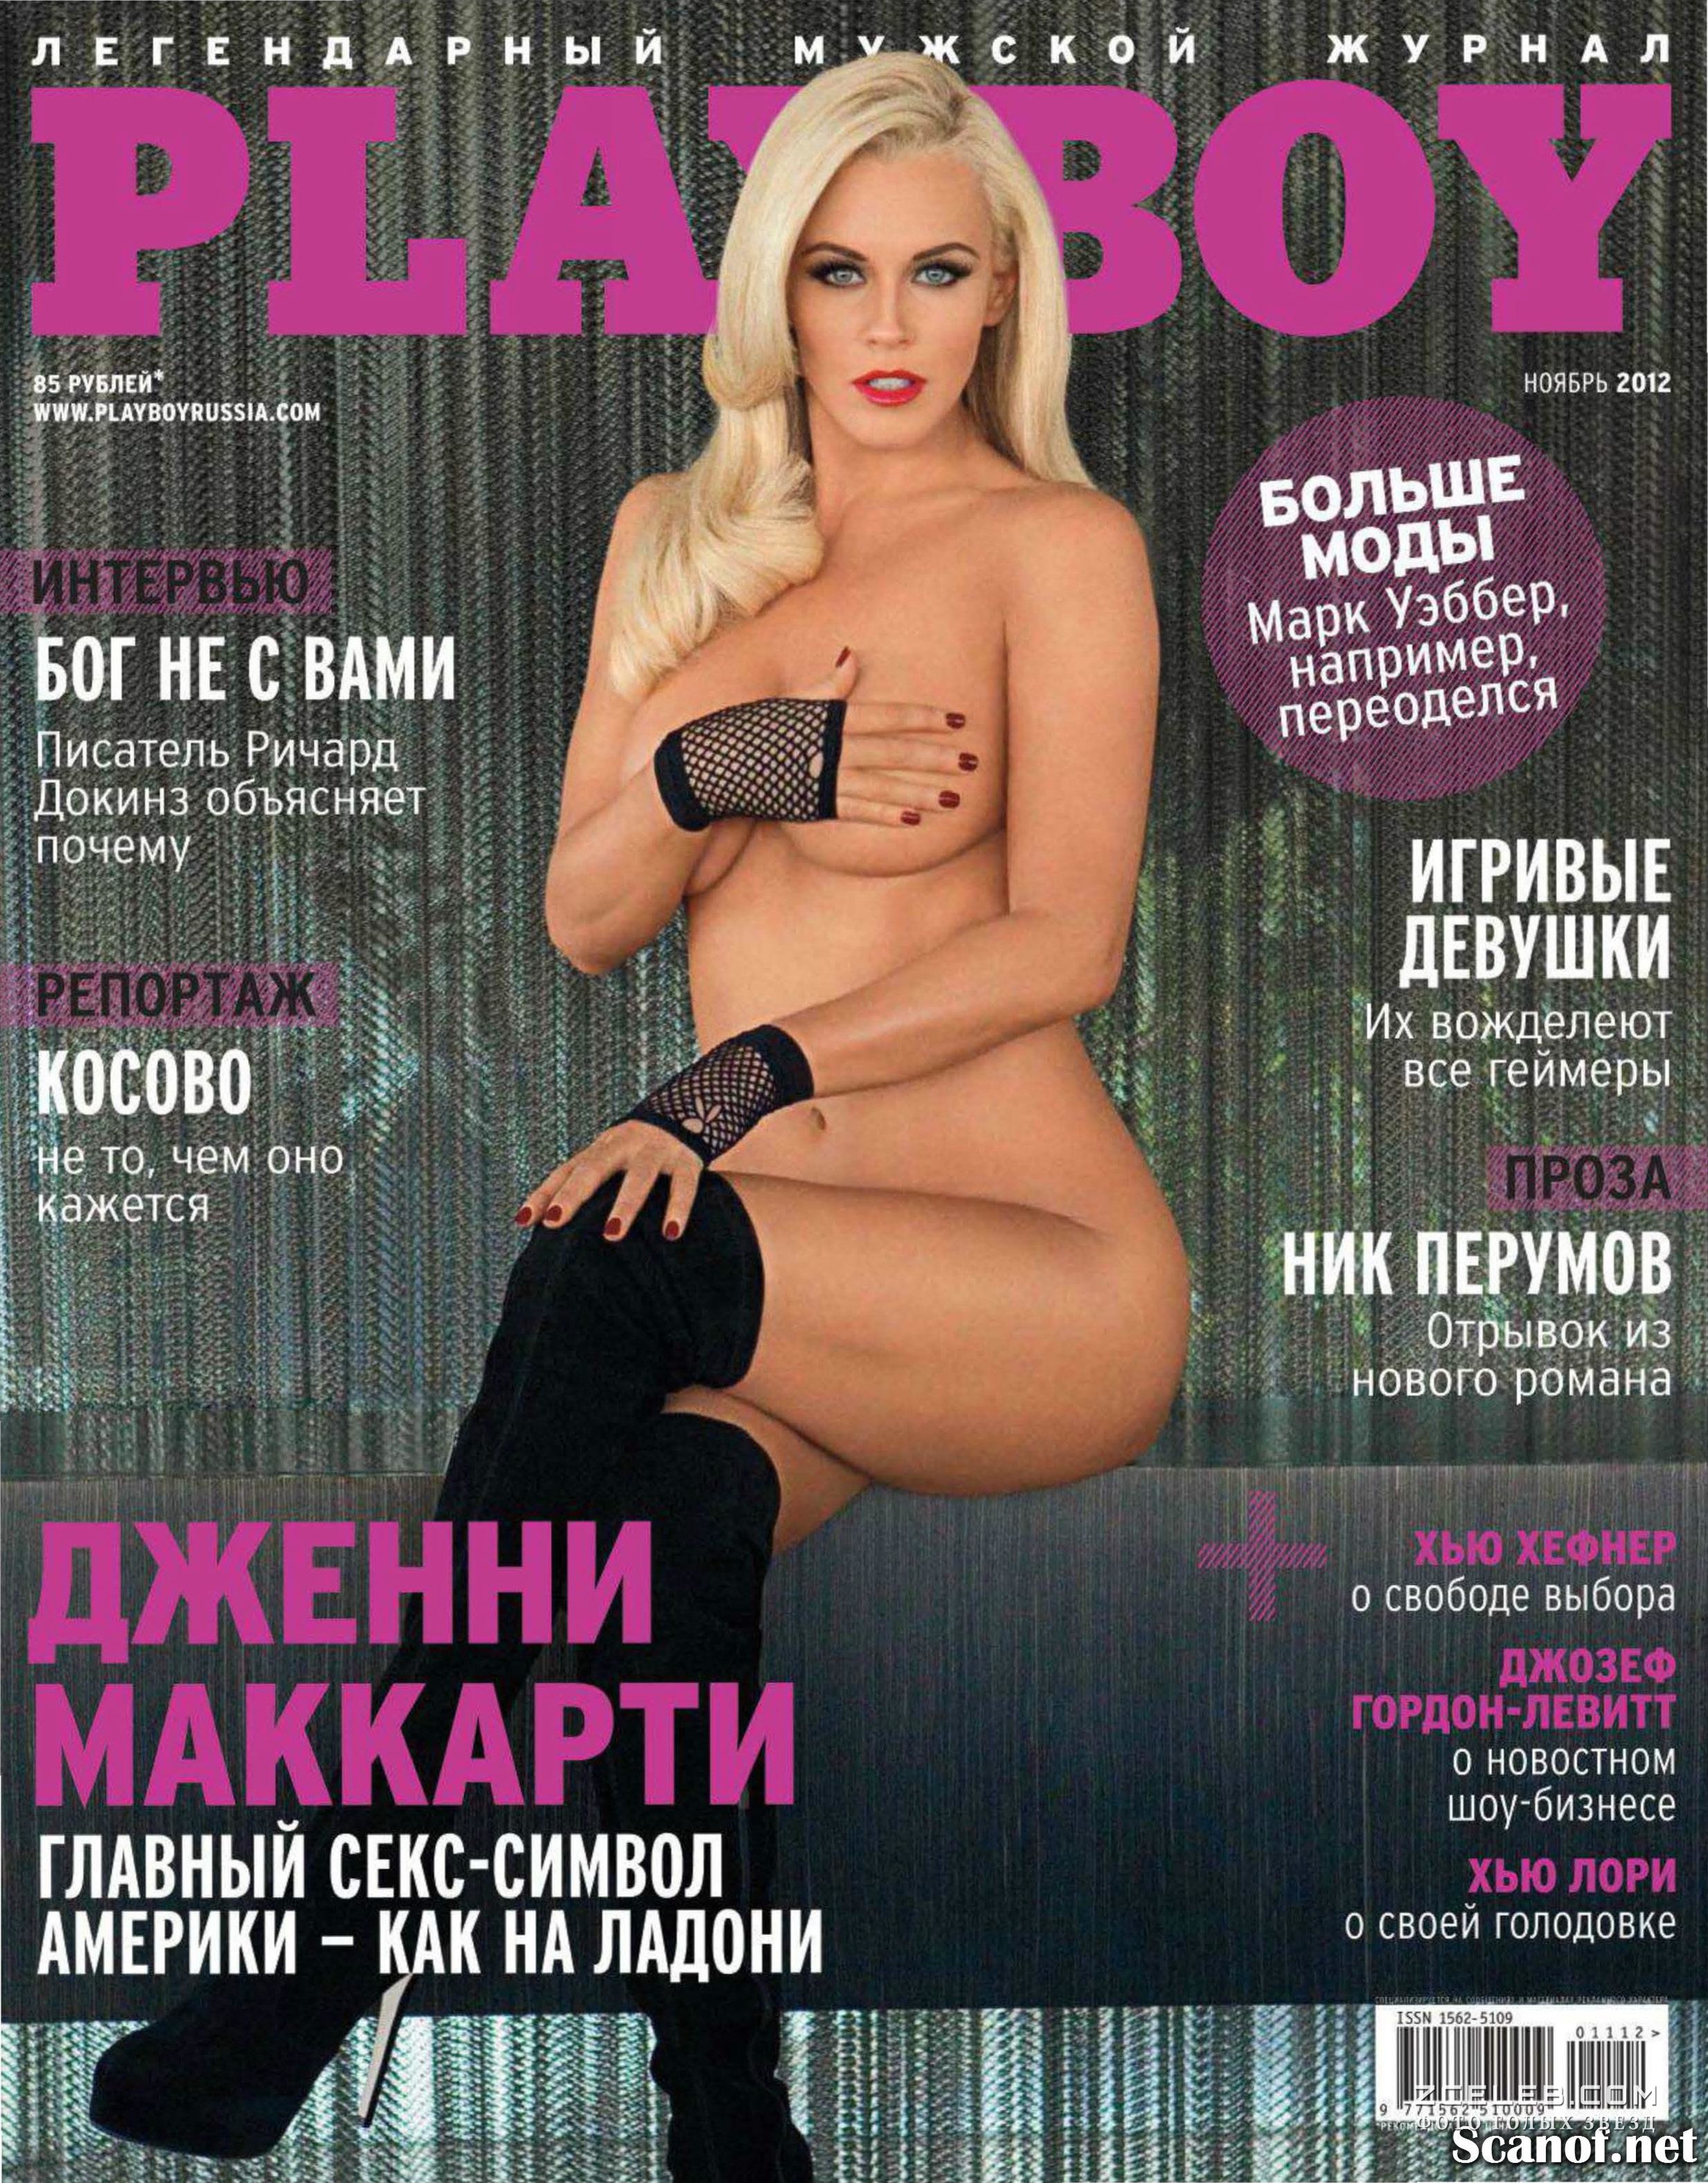 Дженни Маккарти показала себя голой в журнале Playboy, Ноябрь 2012.